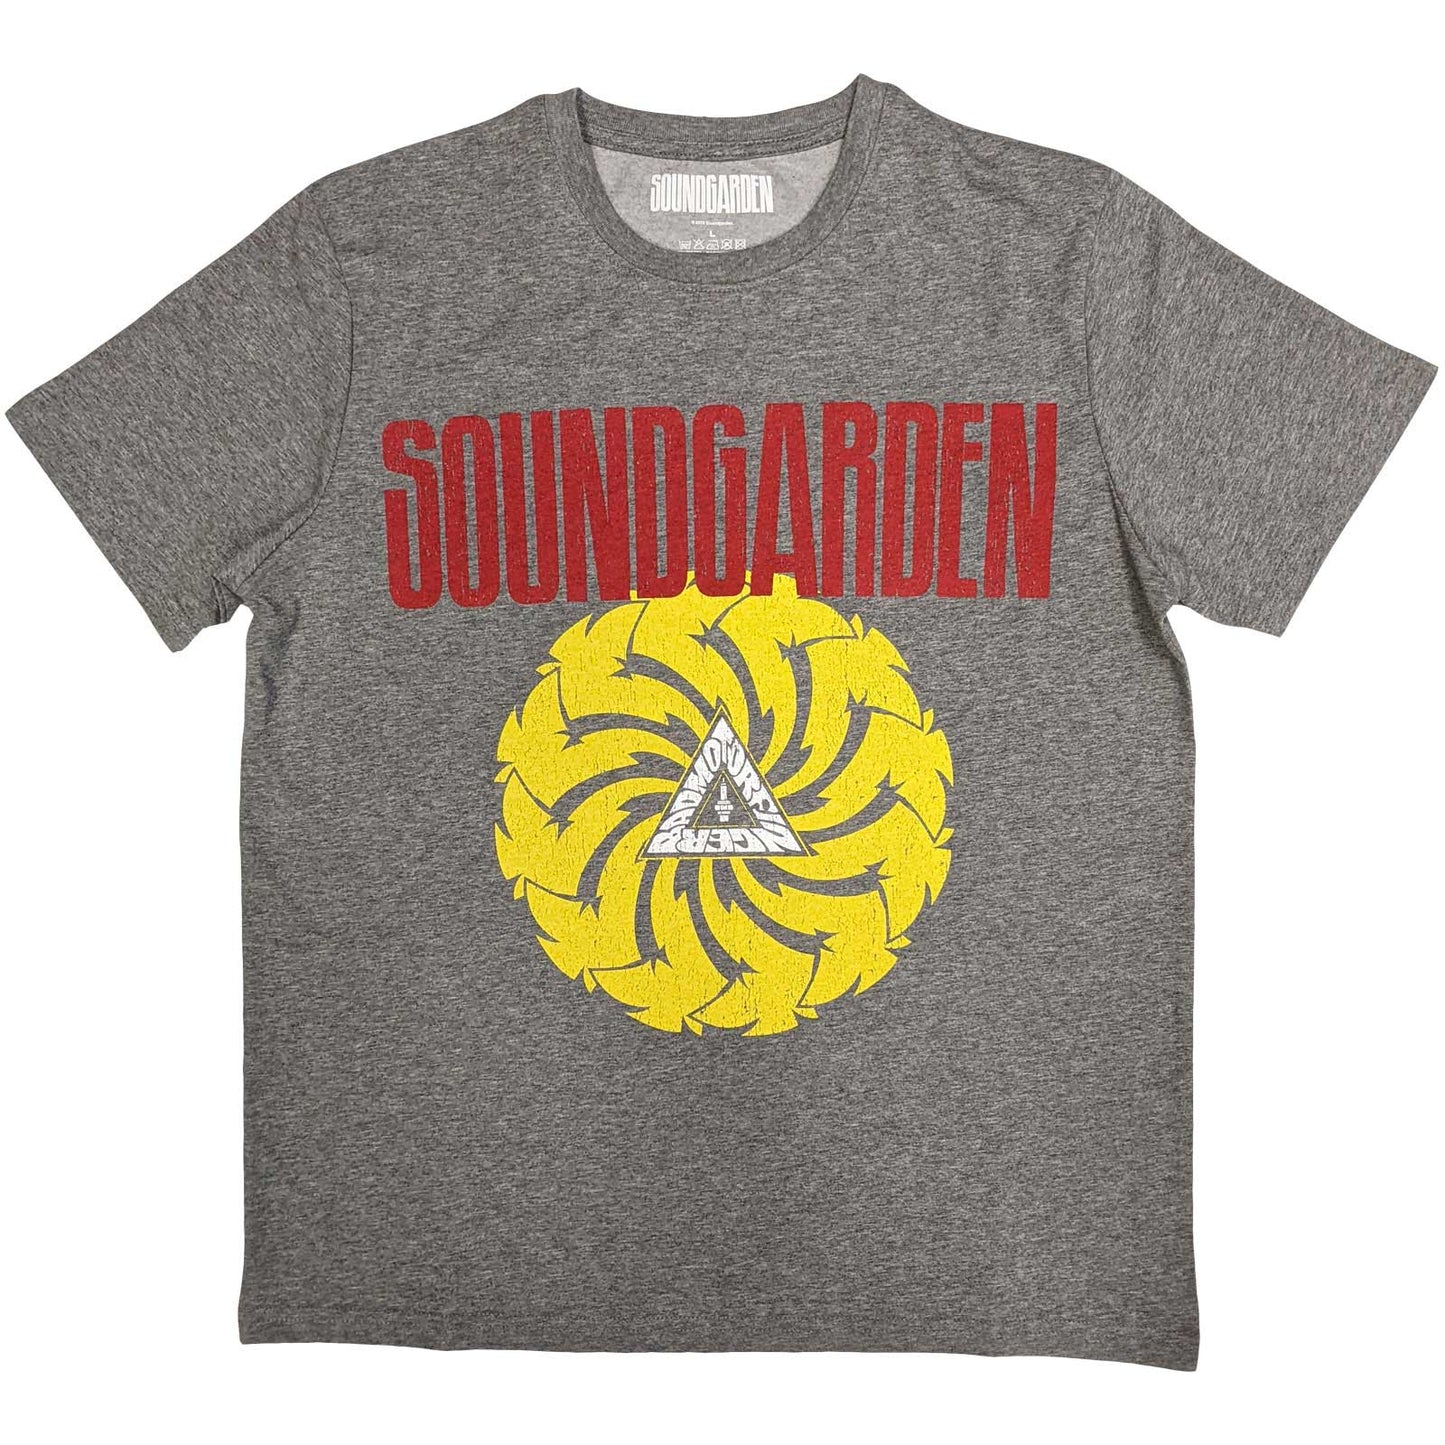 Soundgarden T-Shirt: Badmotorfinger V.1